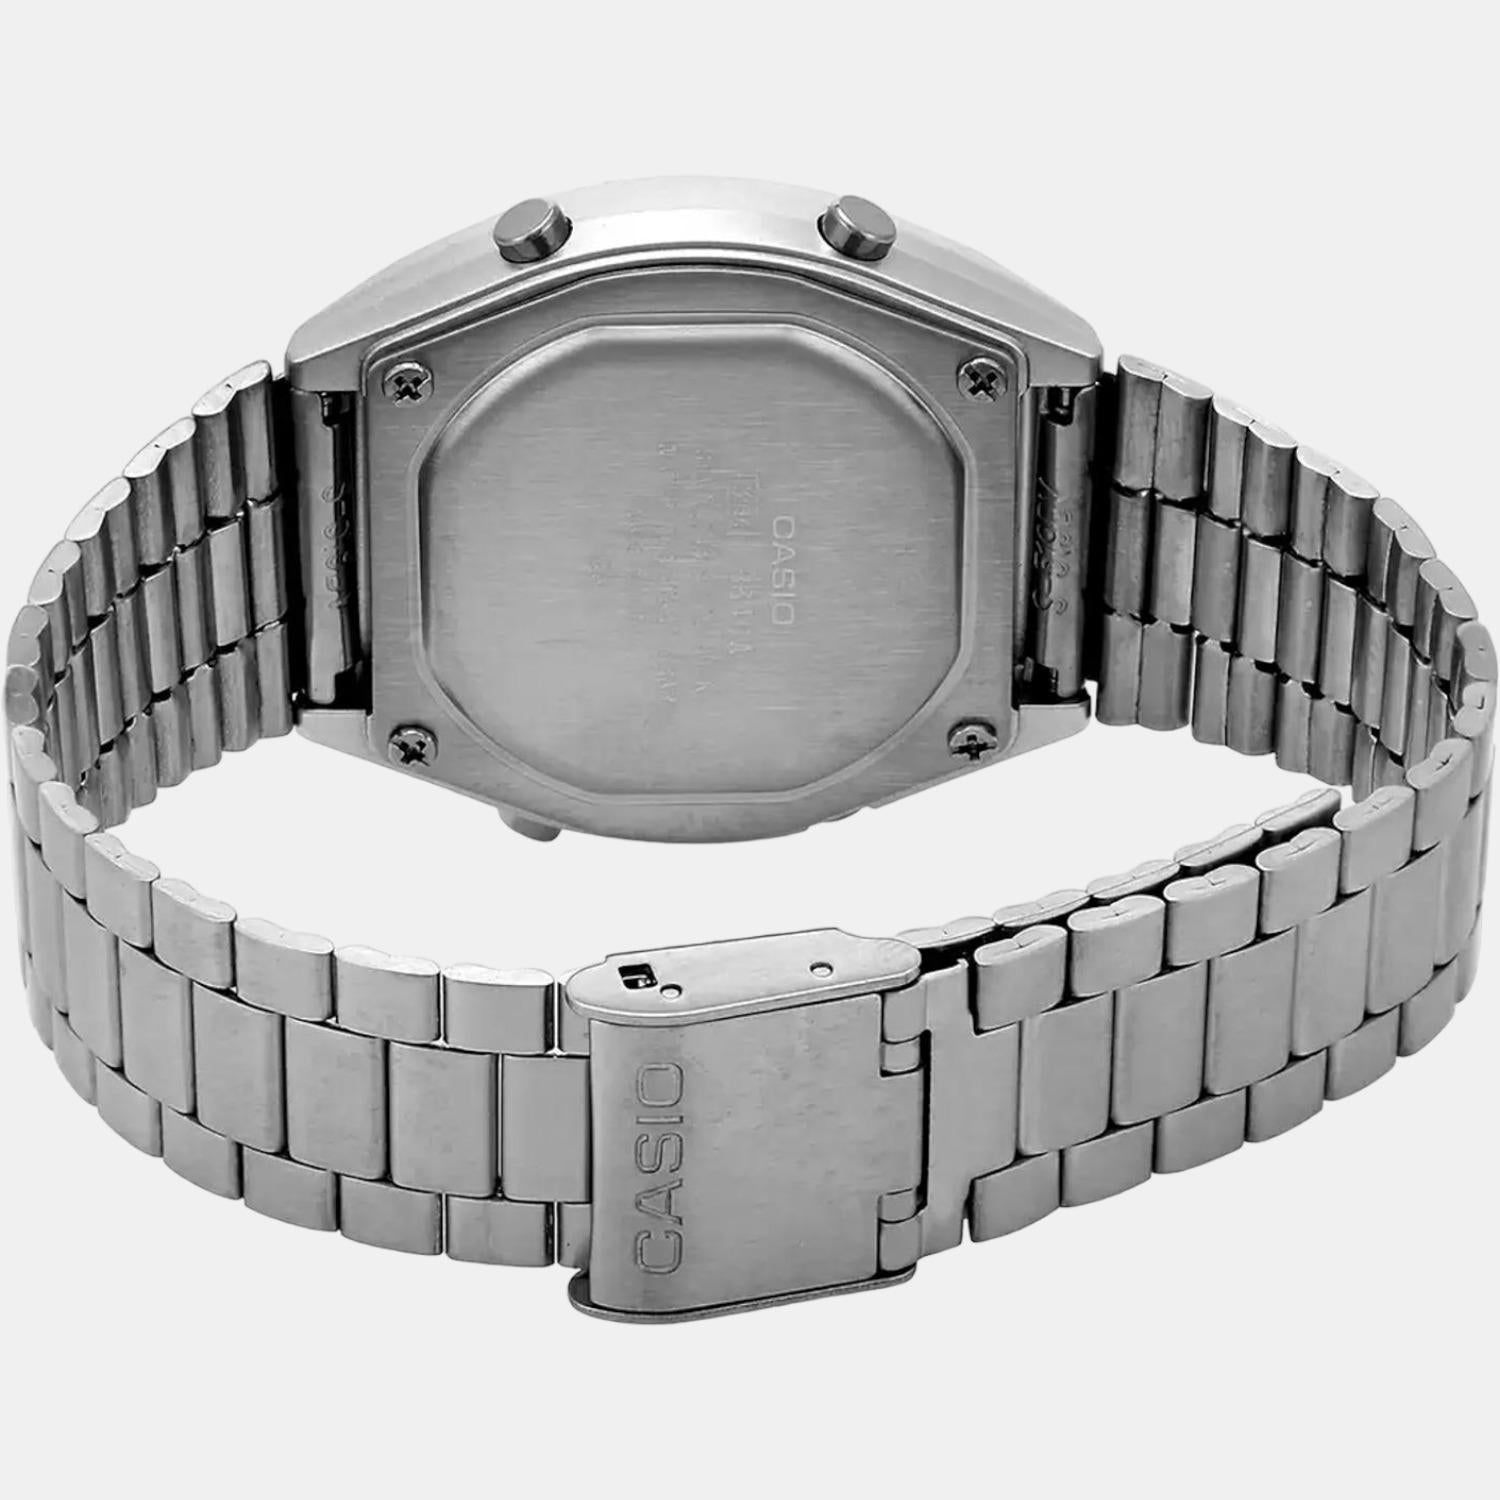 casio-stainless-steel-black-digital-mens-watch-d129